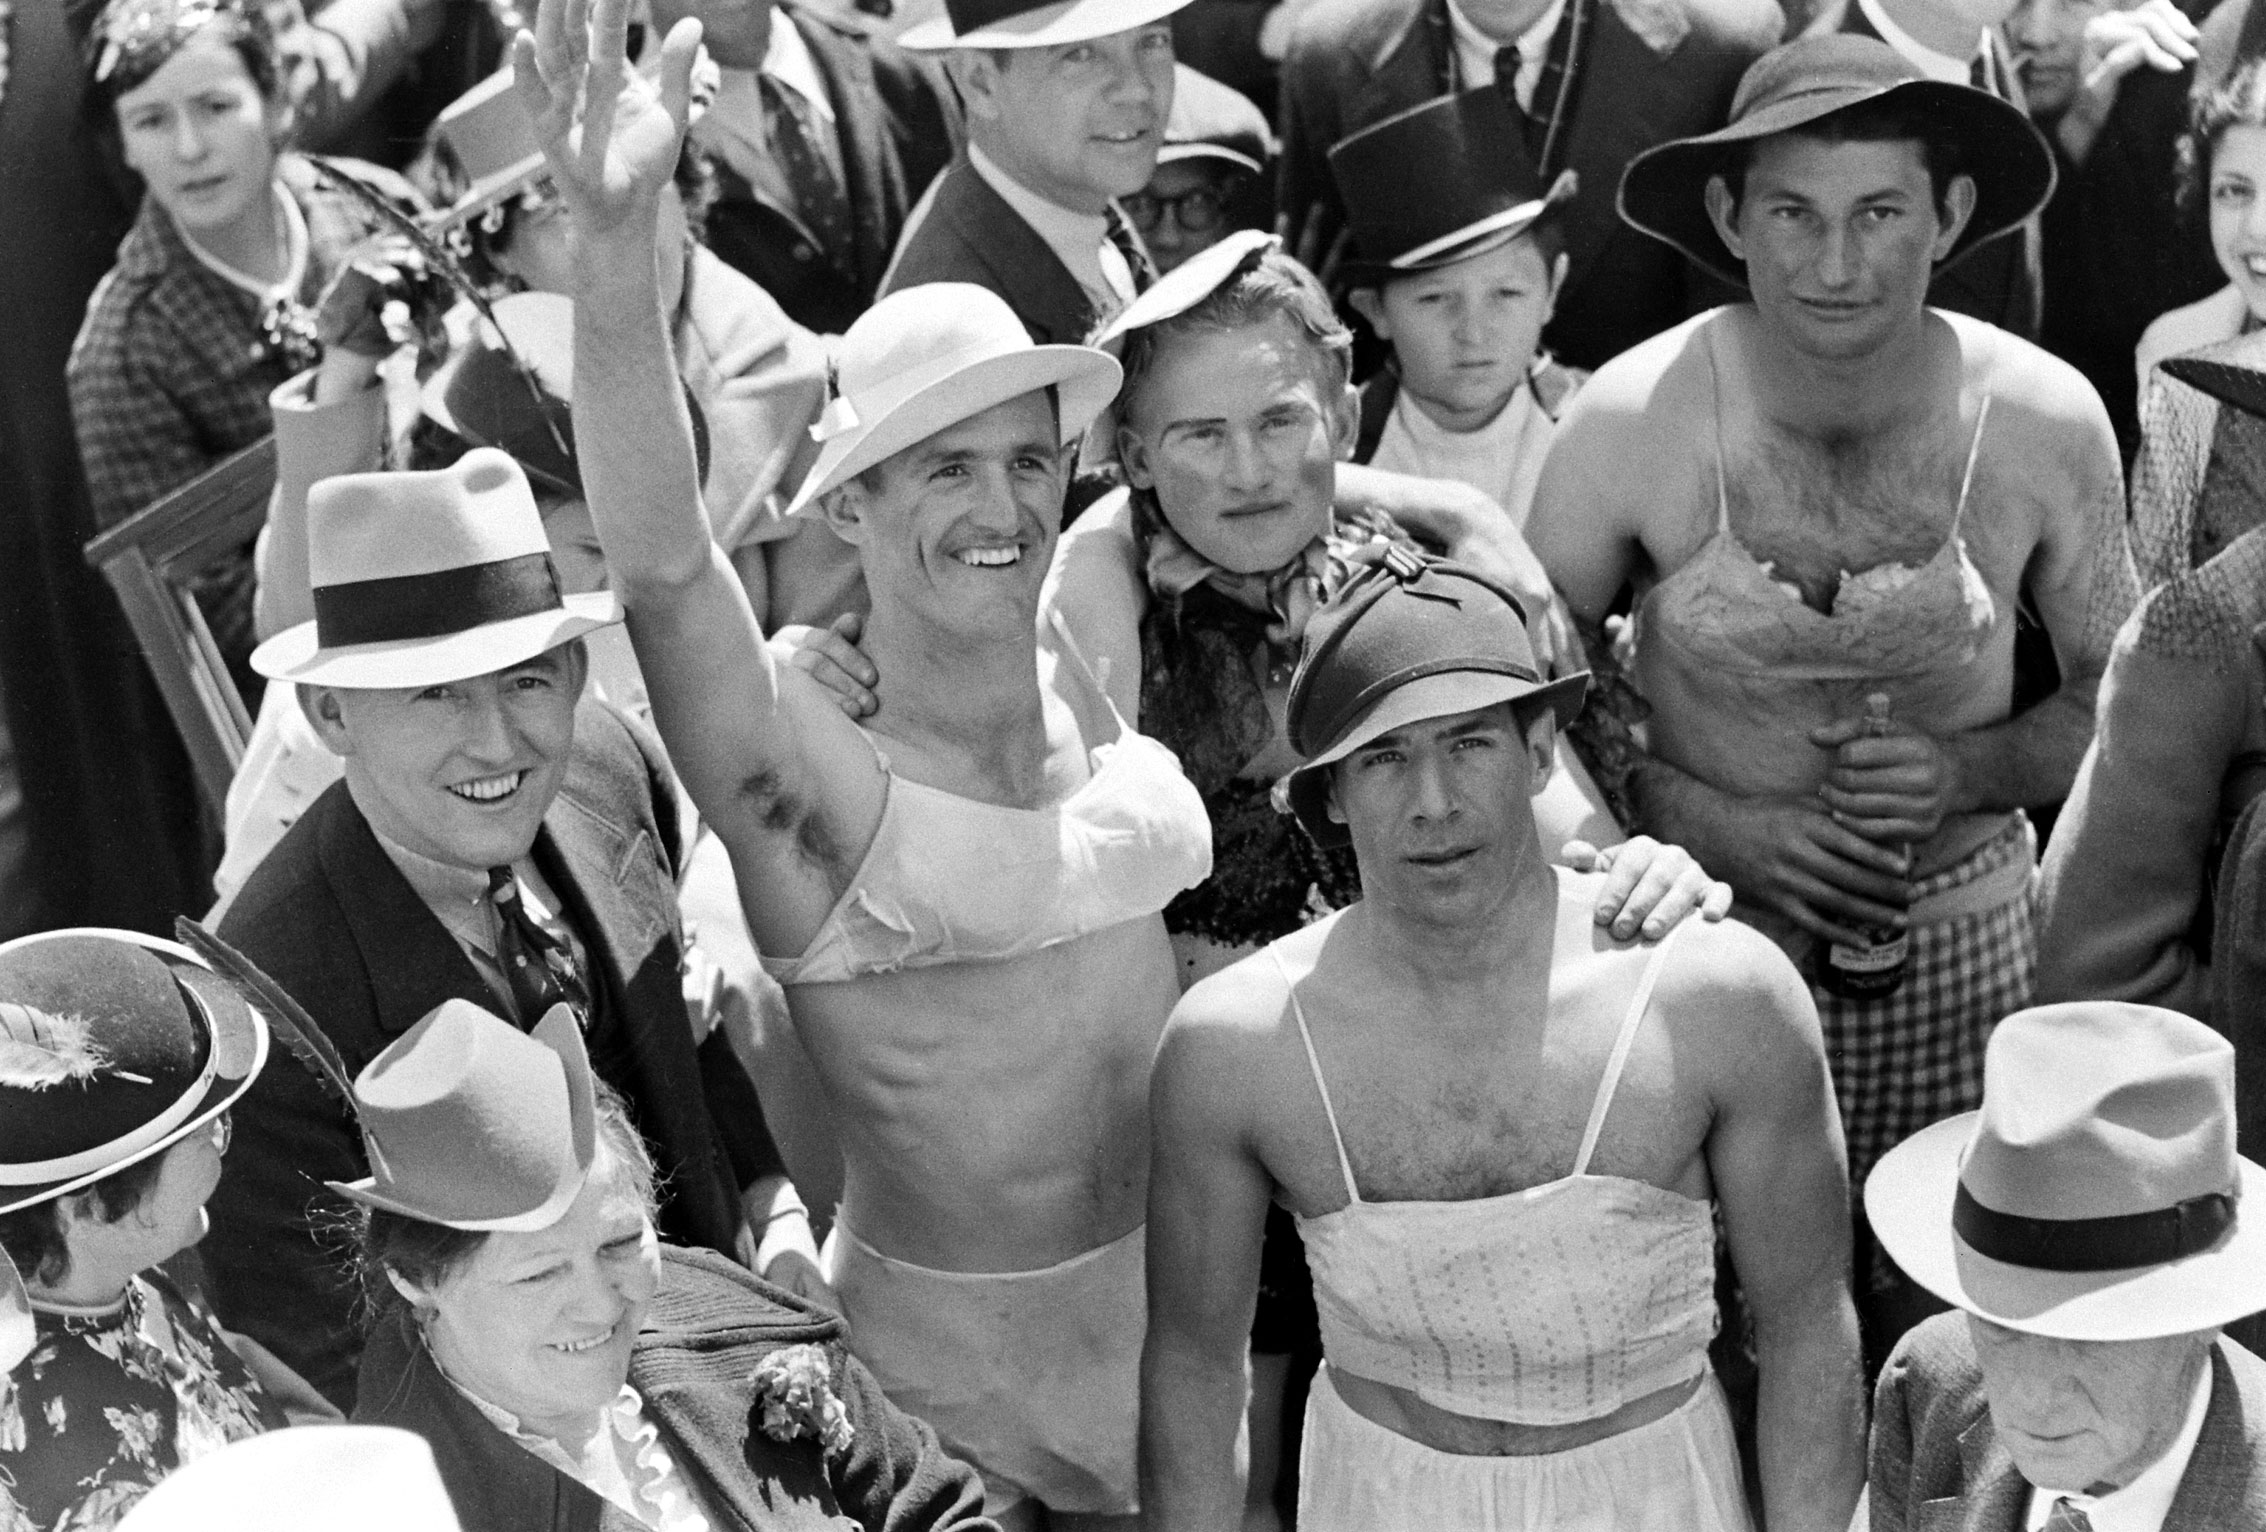 Mardi Gras revelers, New Orleans, 1938.